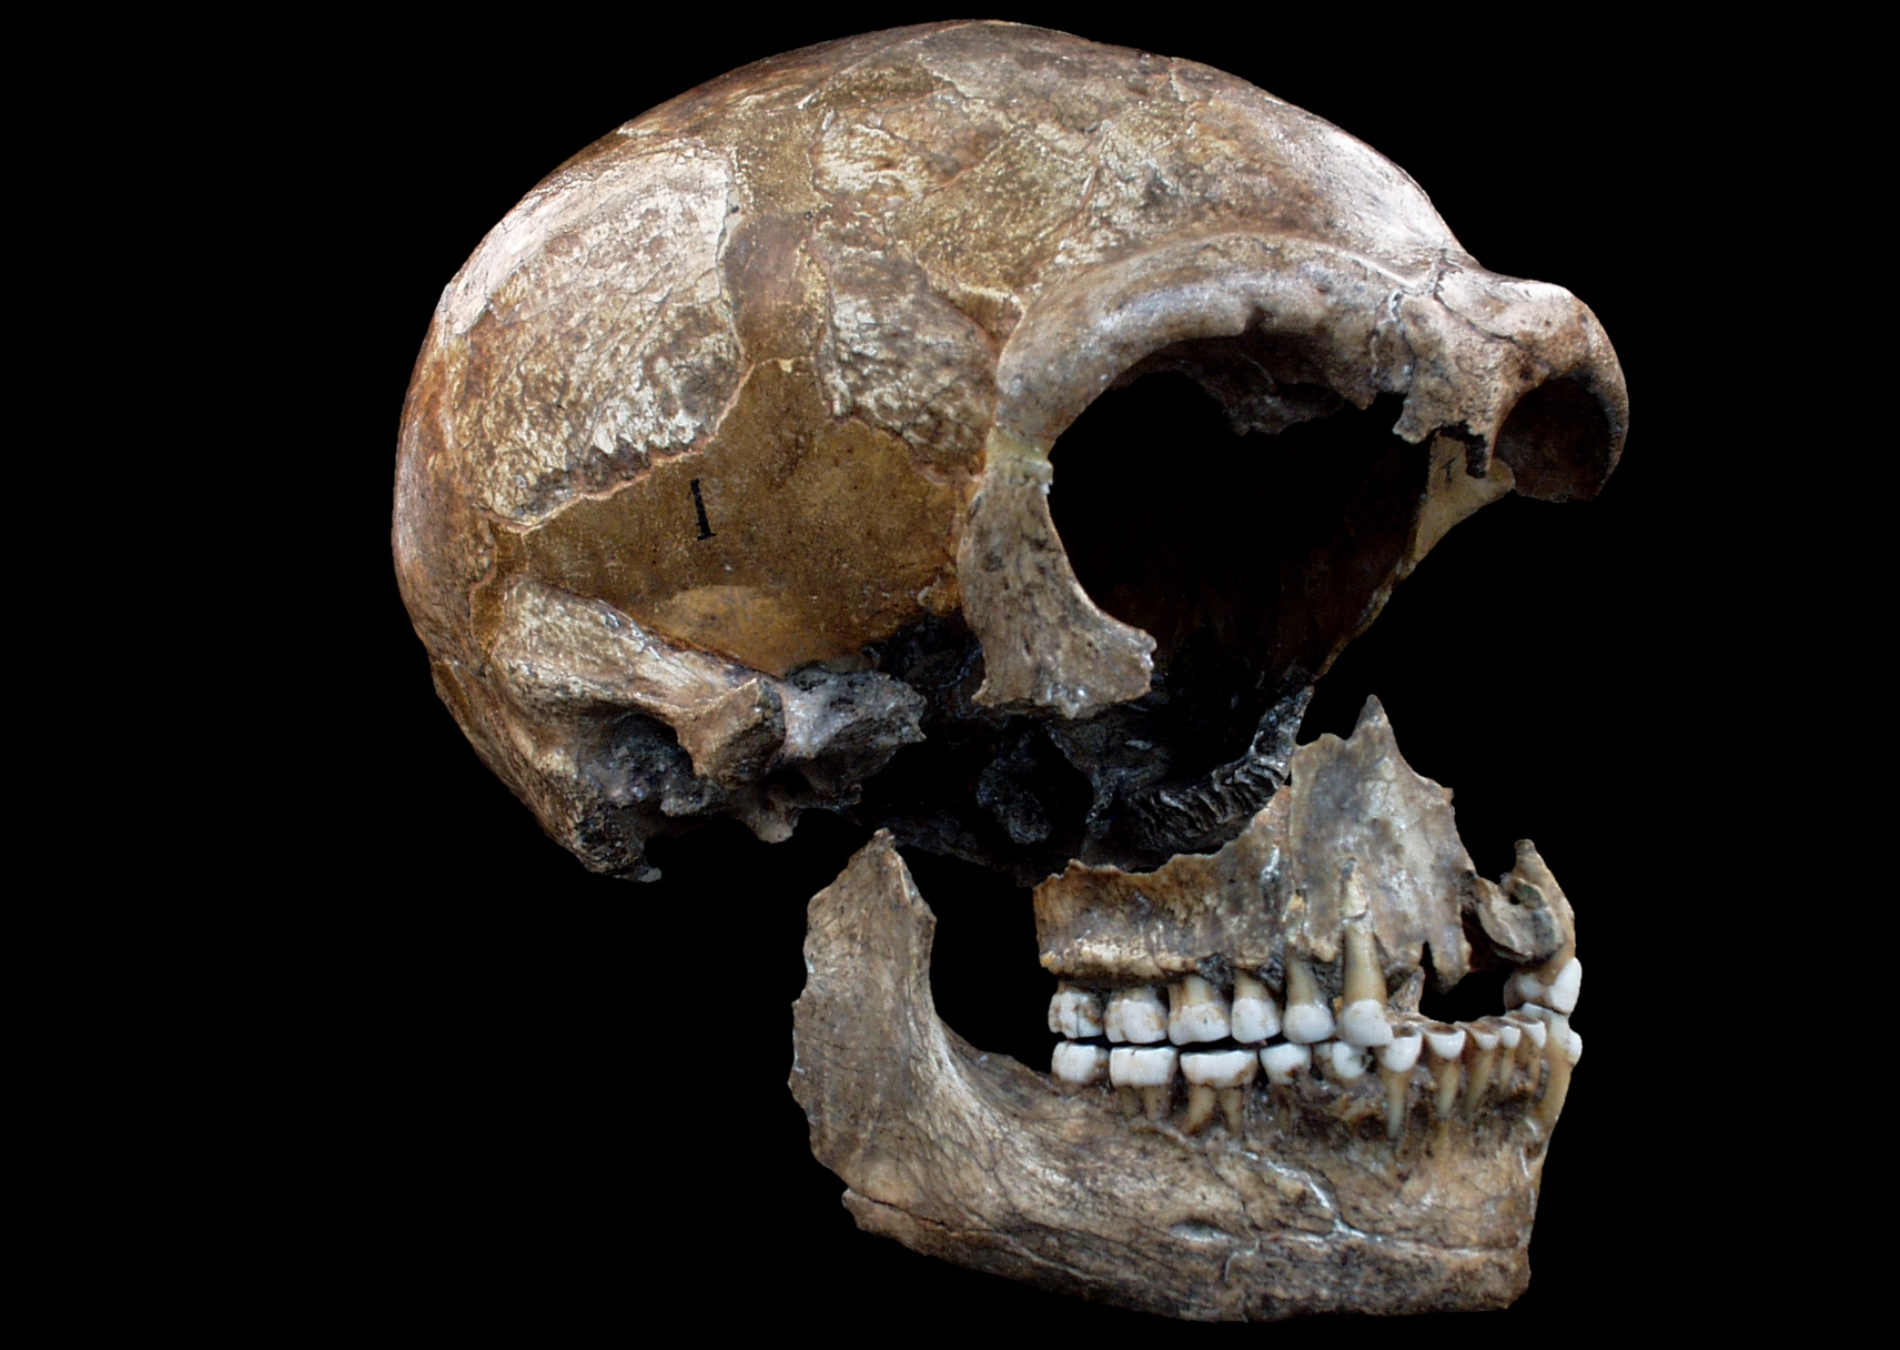 L'homme de Néandertal aurait vécu en Europe et en Asie de -120.000 à -30.000 ans avant notre ère. Sa taille moyenne devait être comprise entre 1,55 et 1,65 mètre. Il fabriquait des outils et maîtrisait le feux. On voit ici un crâne faisant partie des trois squelettes fossiles partiels appartenant à l'espèce Homo neanderthalensis découverts dans la grotte de Spy dans la province de Namur, en Belgique. Les deux premiers squelettes, mis au jour en 1886, constituèrent la deuxième découverte officielle de fossiles néandertaliens après celle de la vallée de Néander, en Allemagne. L'Homme de Spy, comme on l’appelle parfois, avait un régime carné et végétarien. © Patrick Semal, Institut des Sciences naturelles de Belgique.